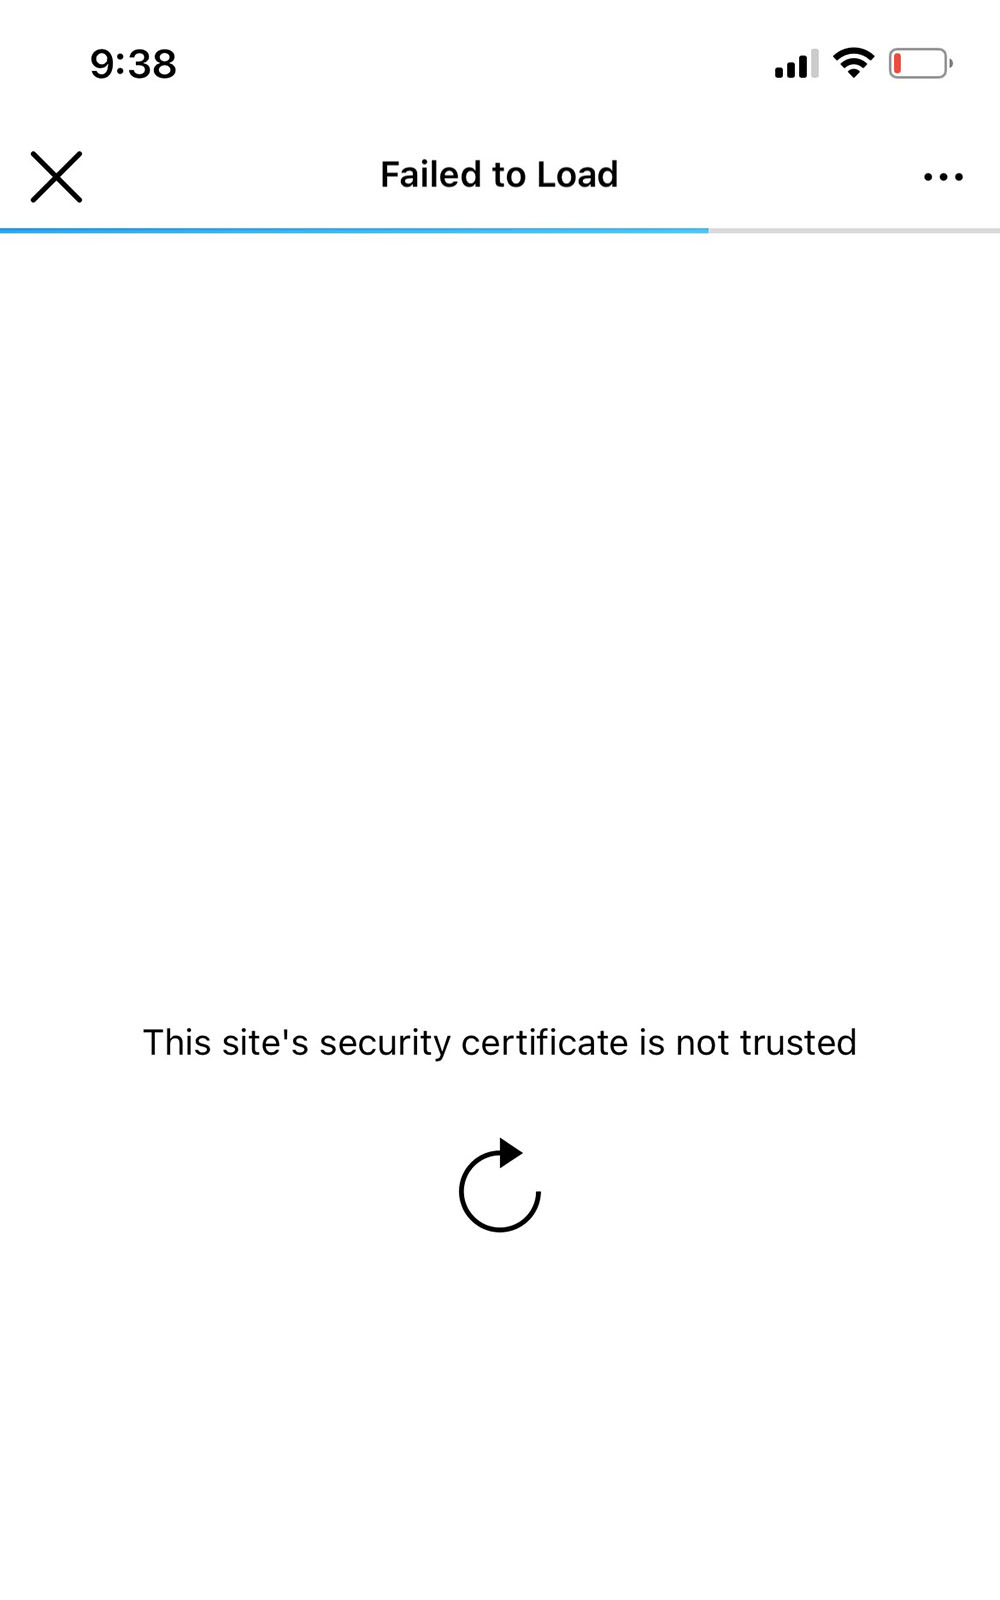 SSL certificate for websites